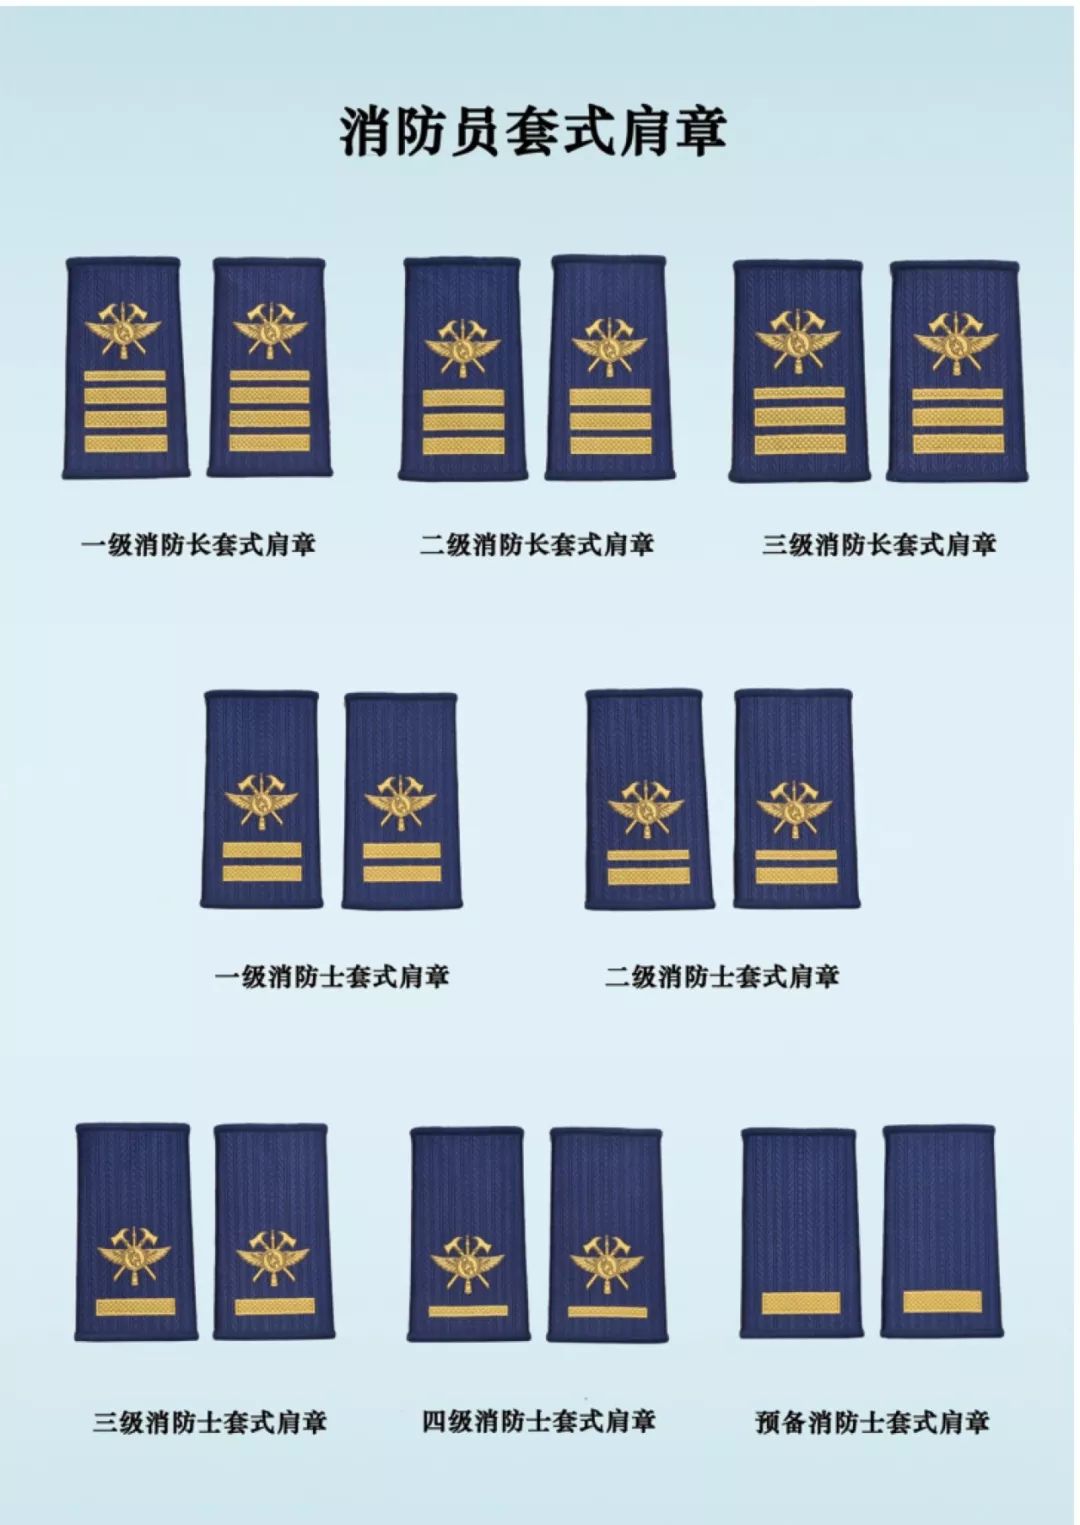 消防员肩章等级及标志图片